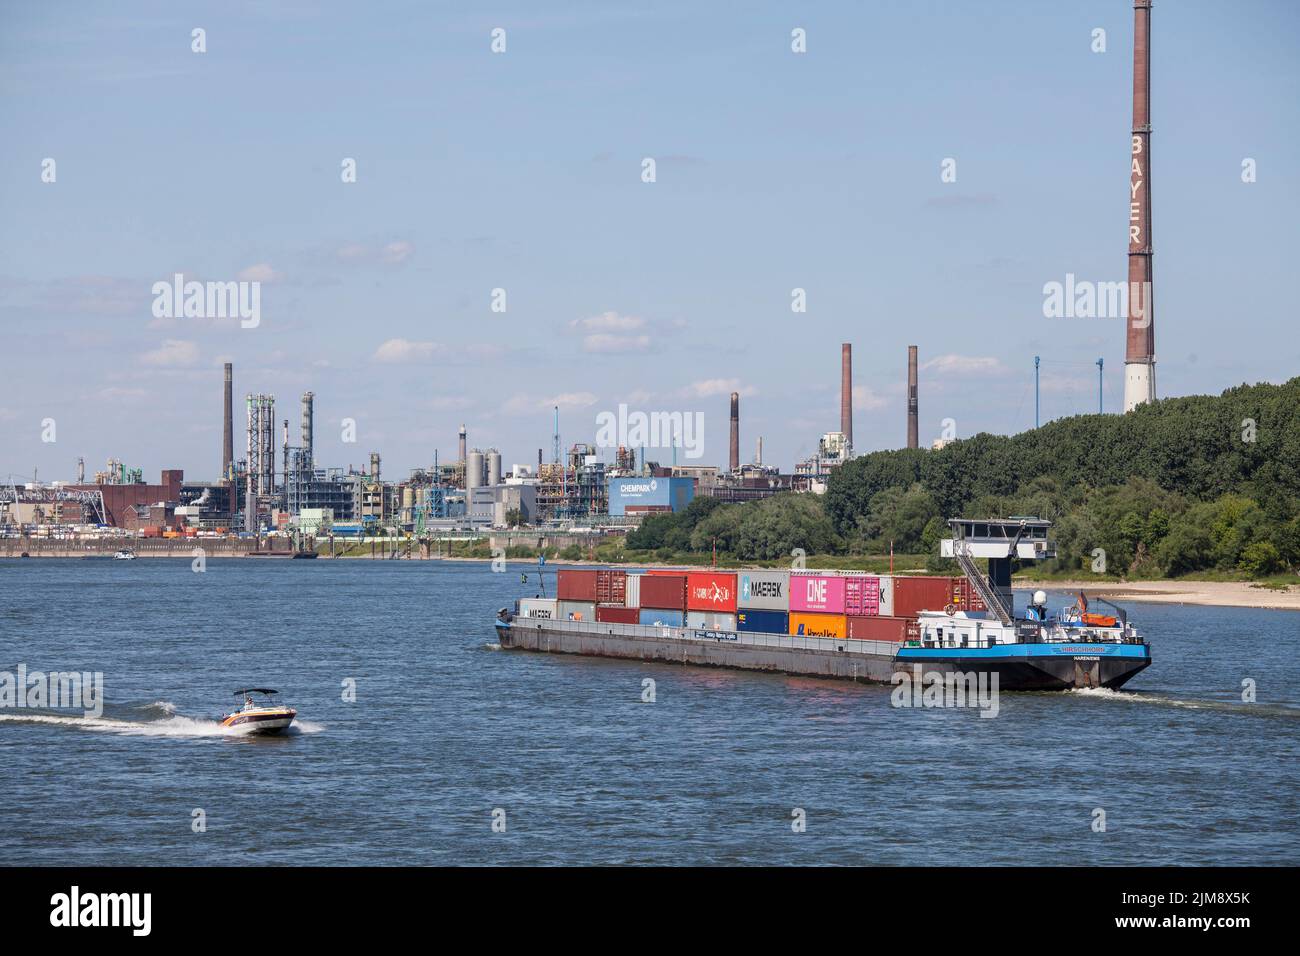 Navire-conteneur sur le Rhin, vue sur le Chempark, anciennement connu sous le nom d'usine Bayer, Leverkusen, Rhénanie-du-Nord-Westphalie, Allemagne. Containerschiff Banque D'Images